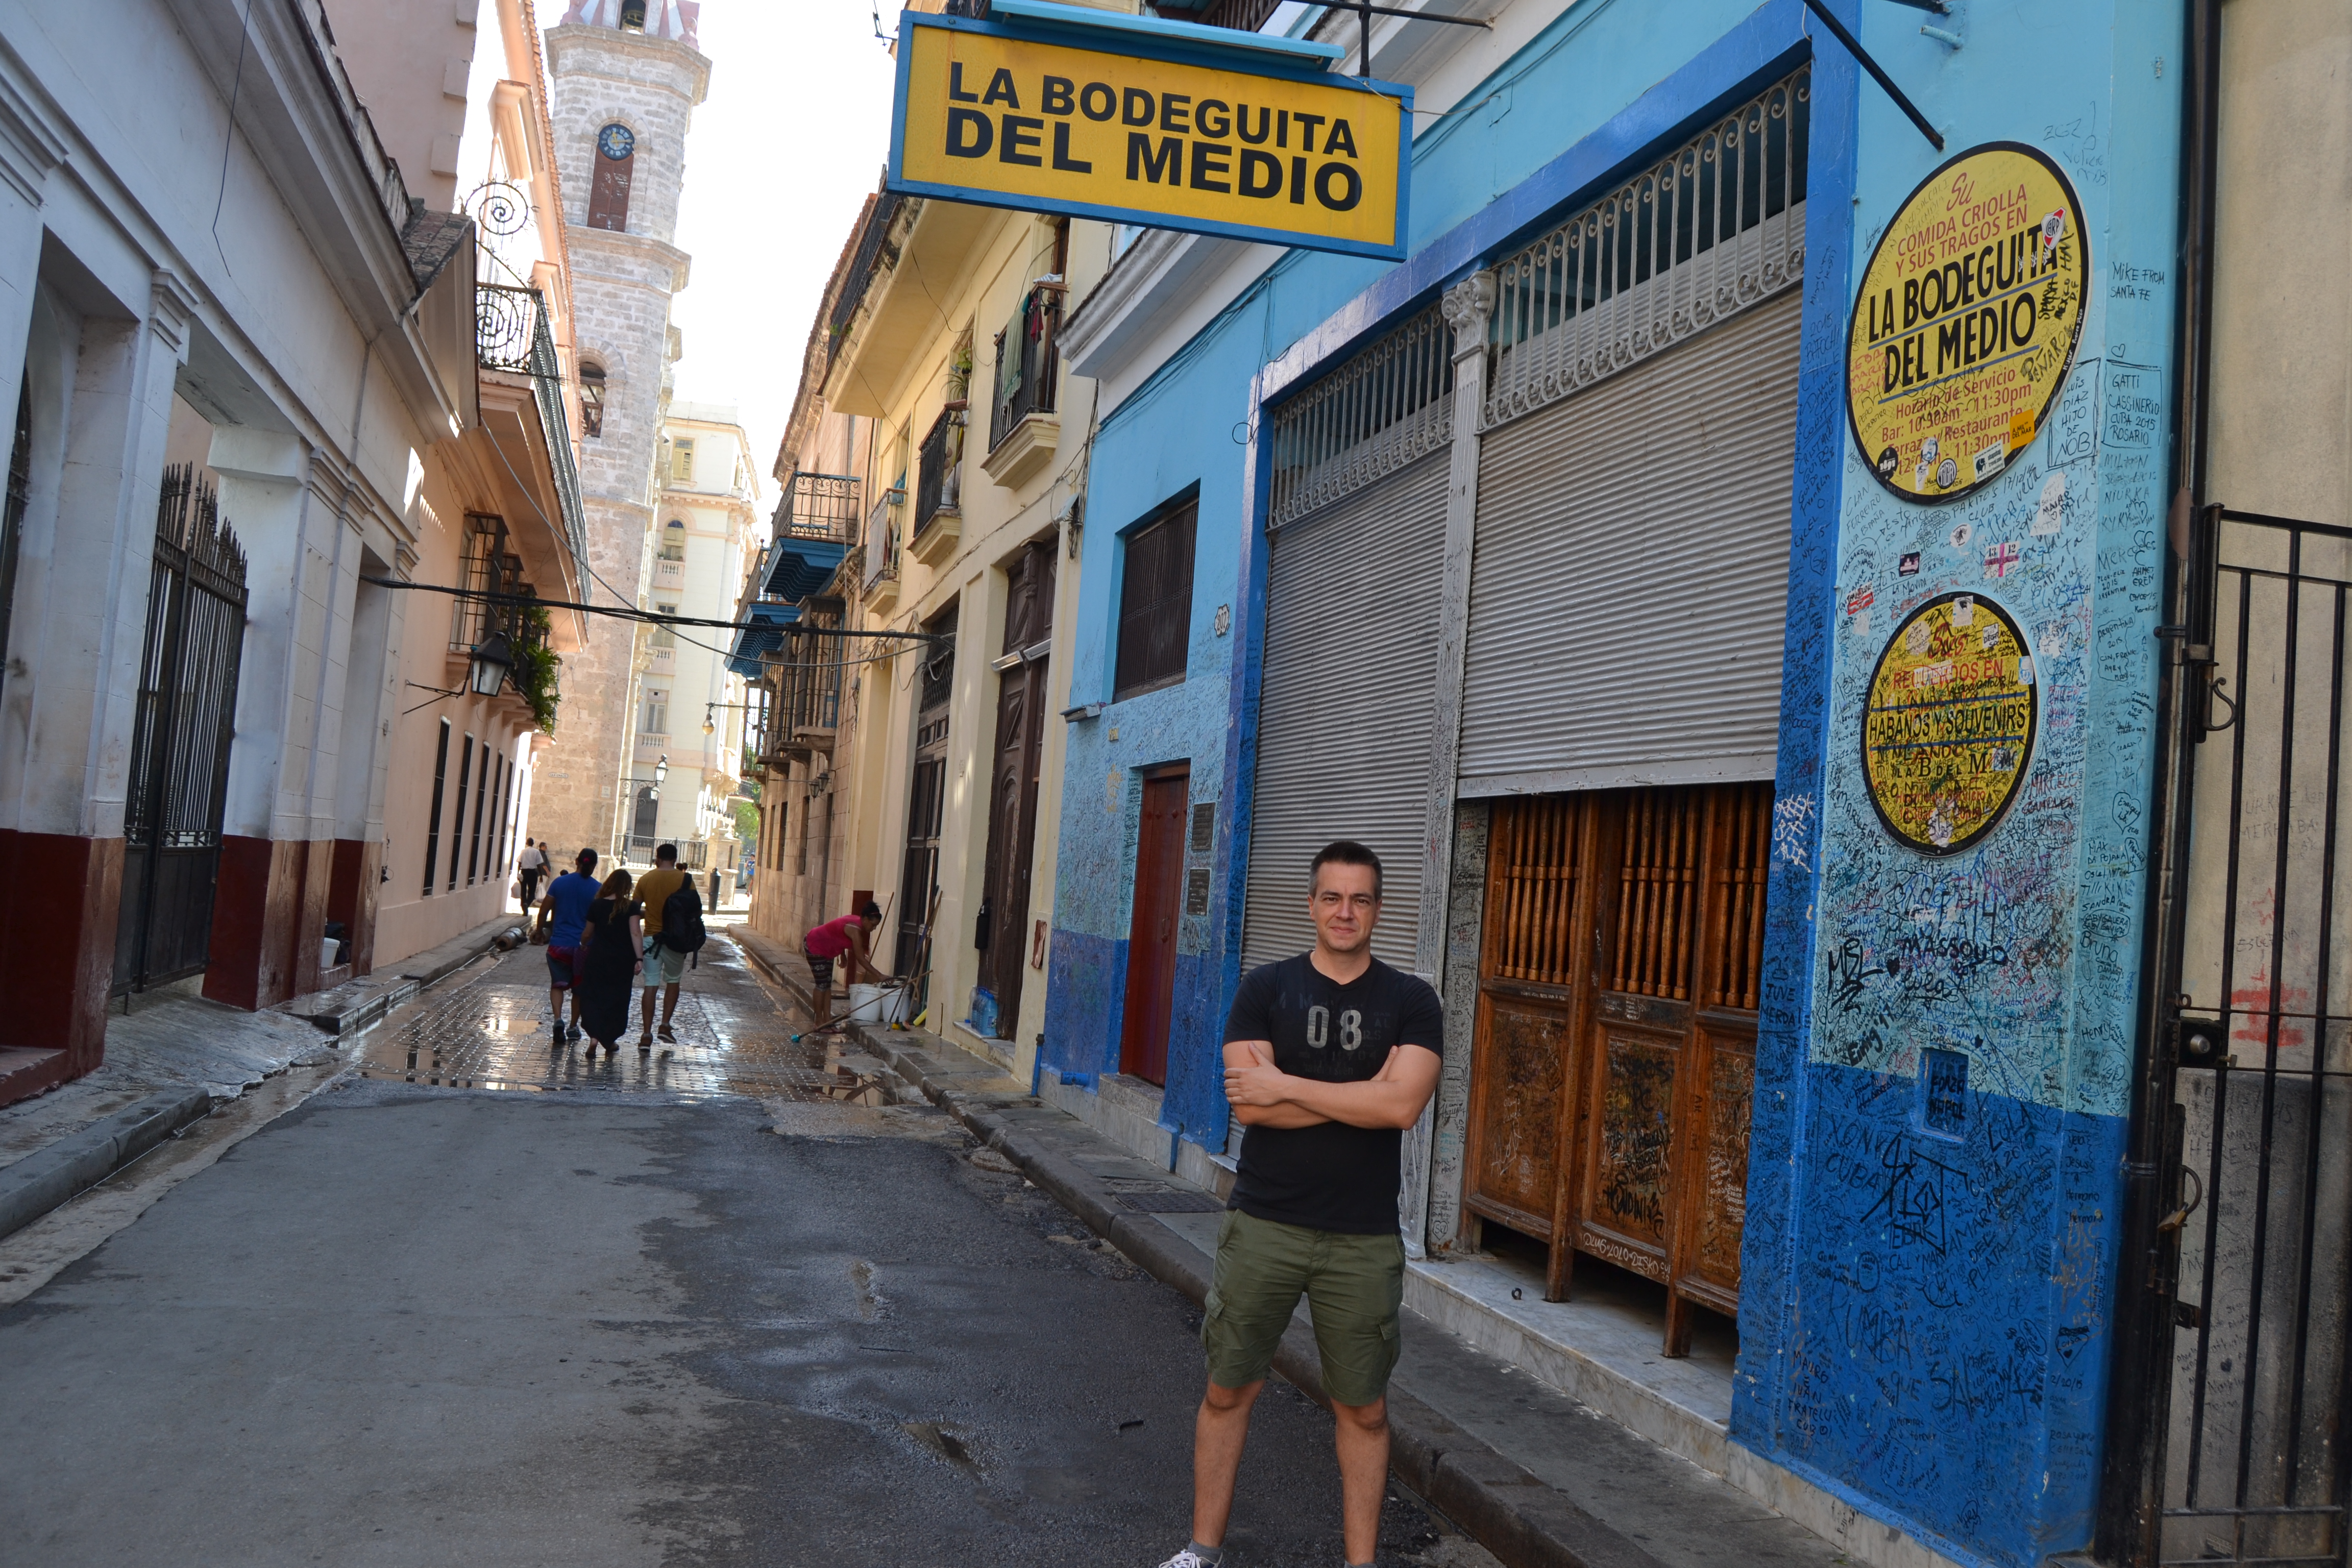 Bodeguita del Medio, La Habana, Cuba